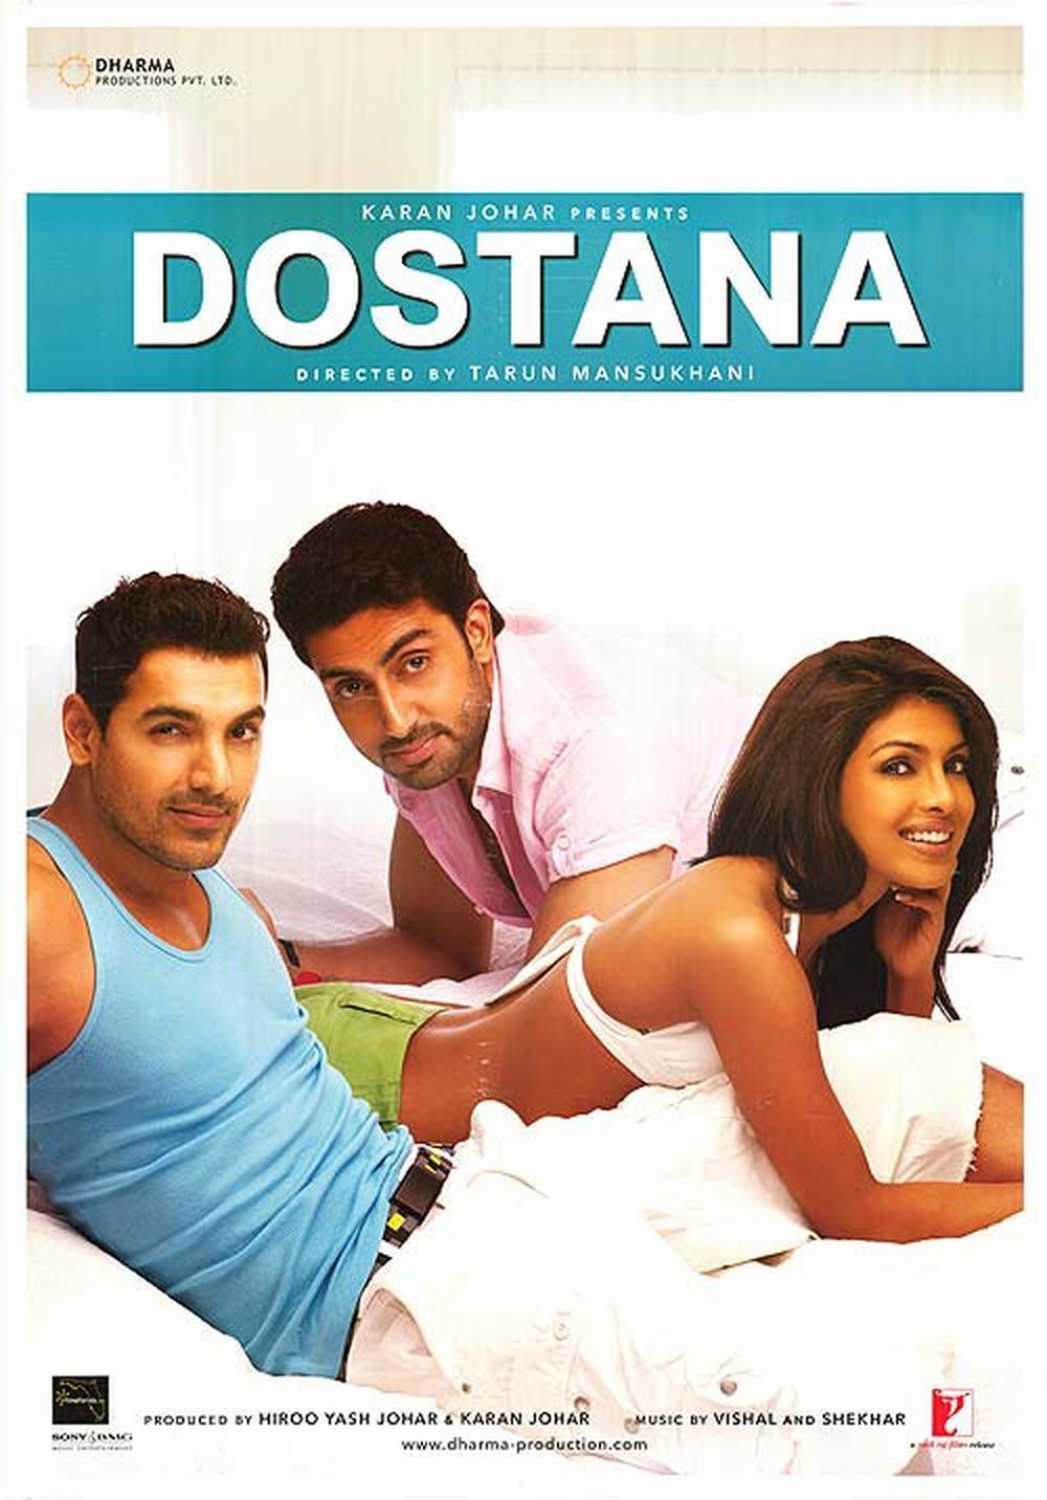 dostana 2008 hindi movie torrent